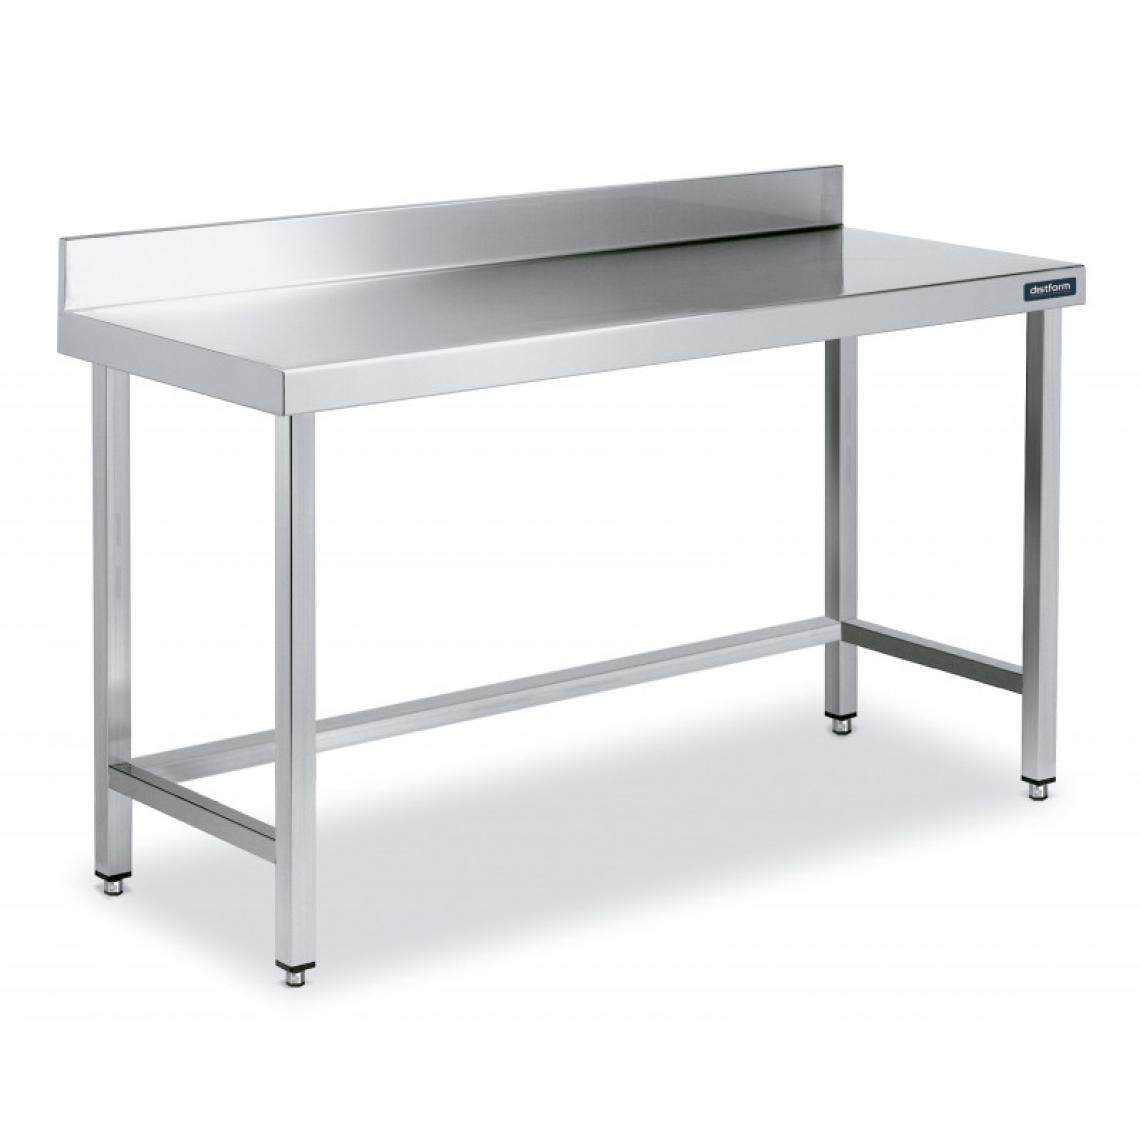 DISTFORM - Table Inox de Travail avec Dosseret Gamme 800 - Distform - Acier inoxydable900x800 - Tables à manger